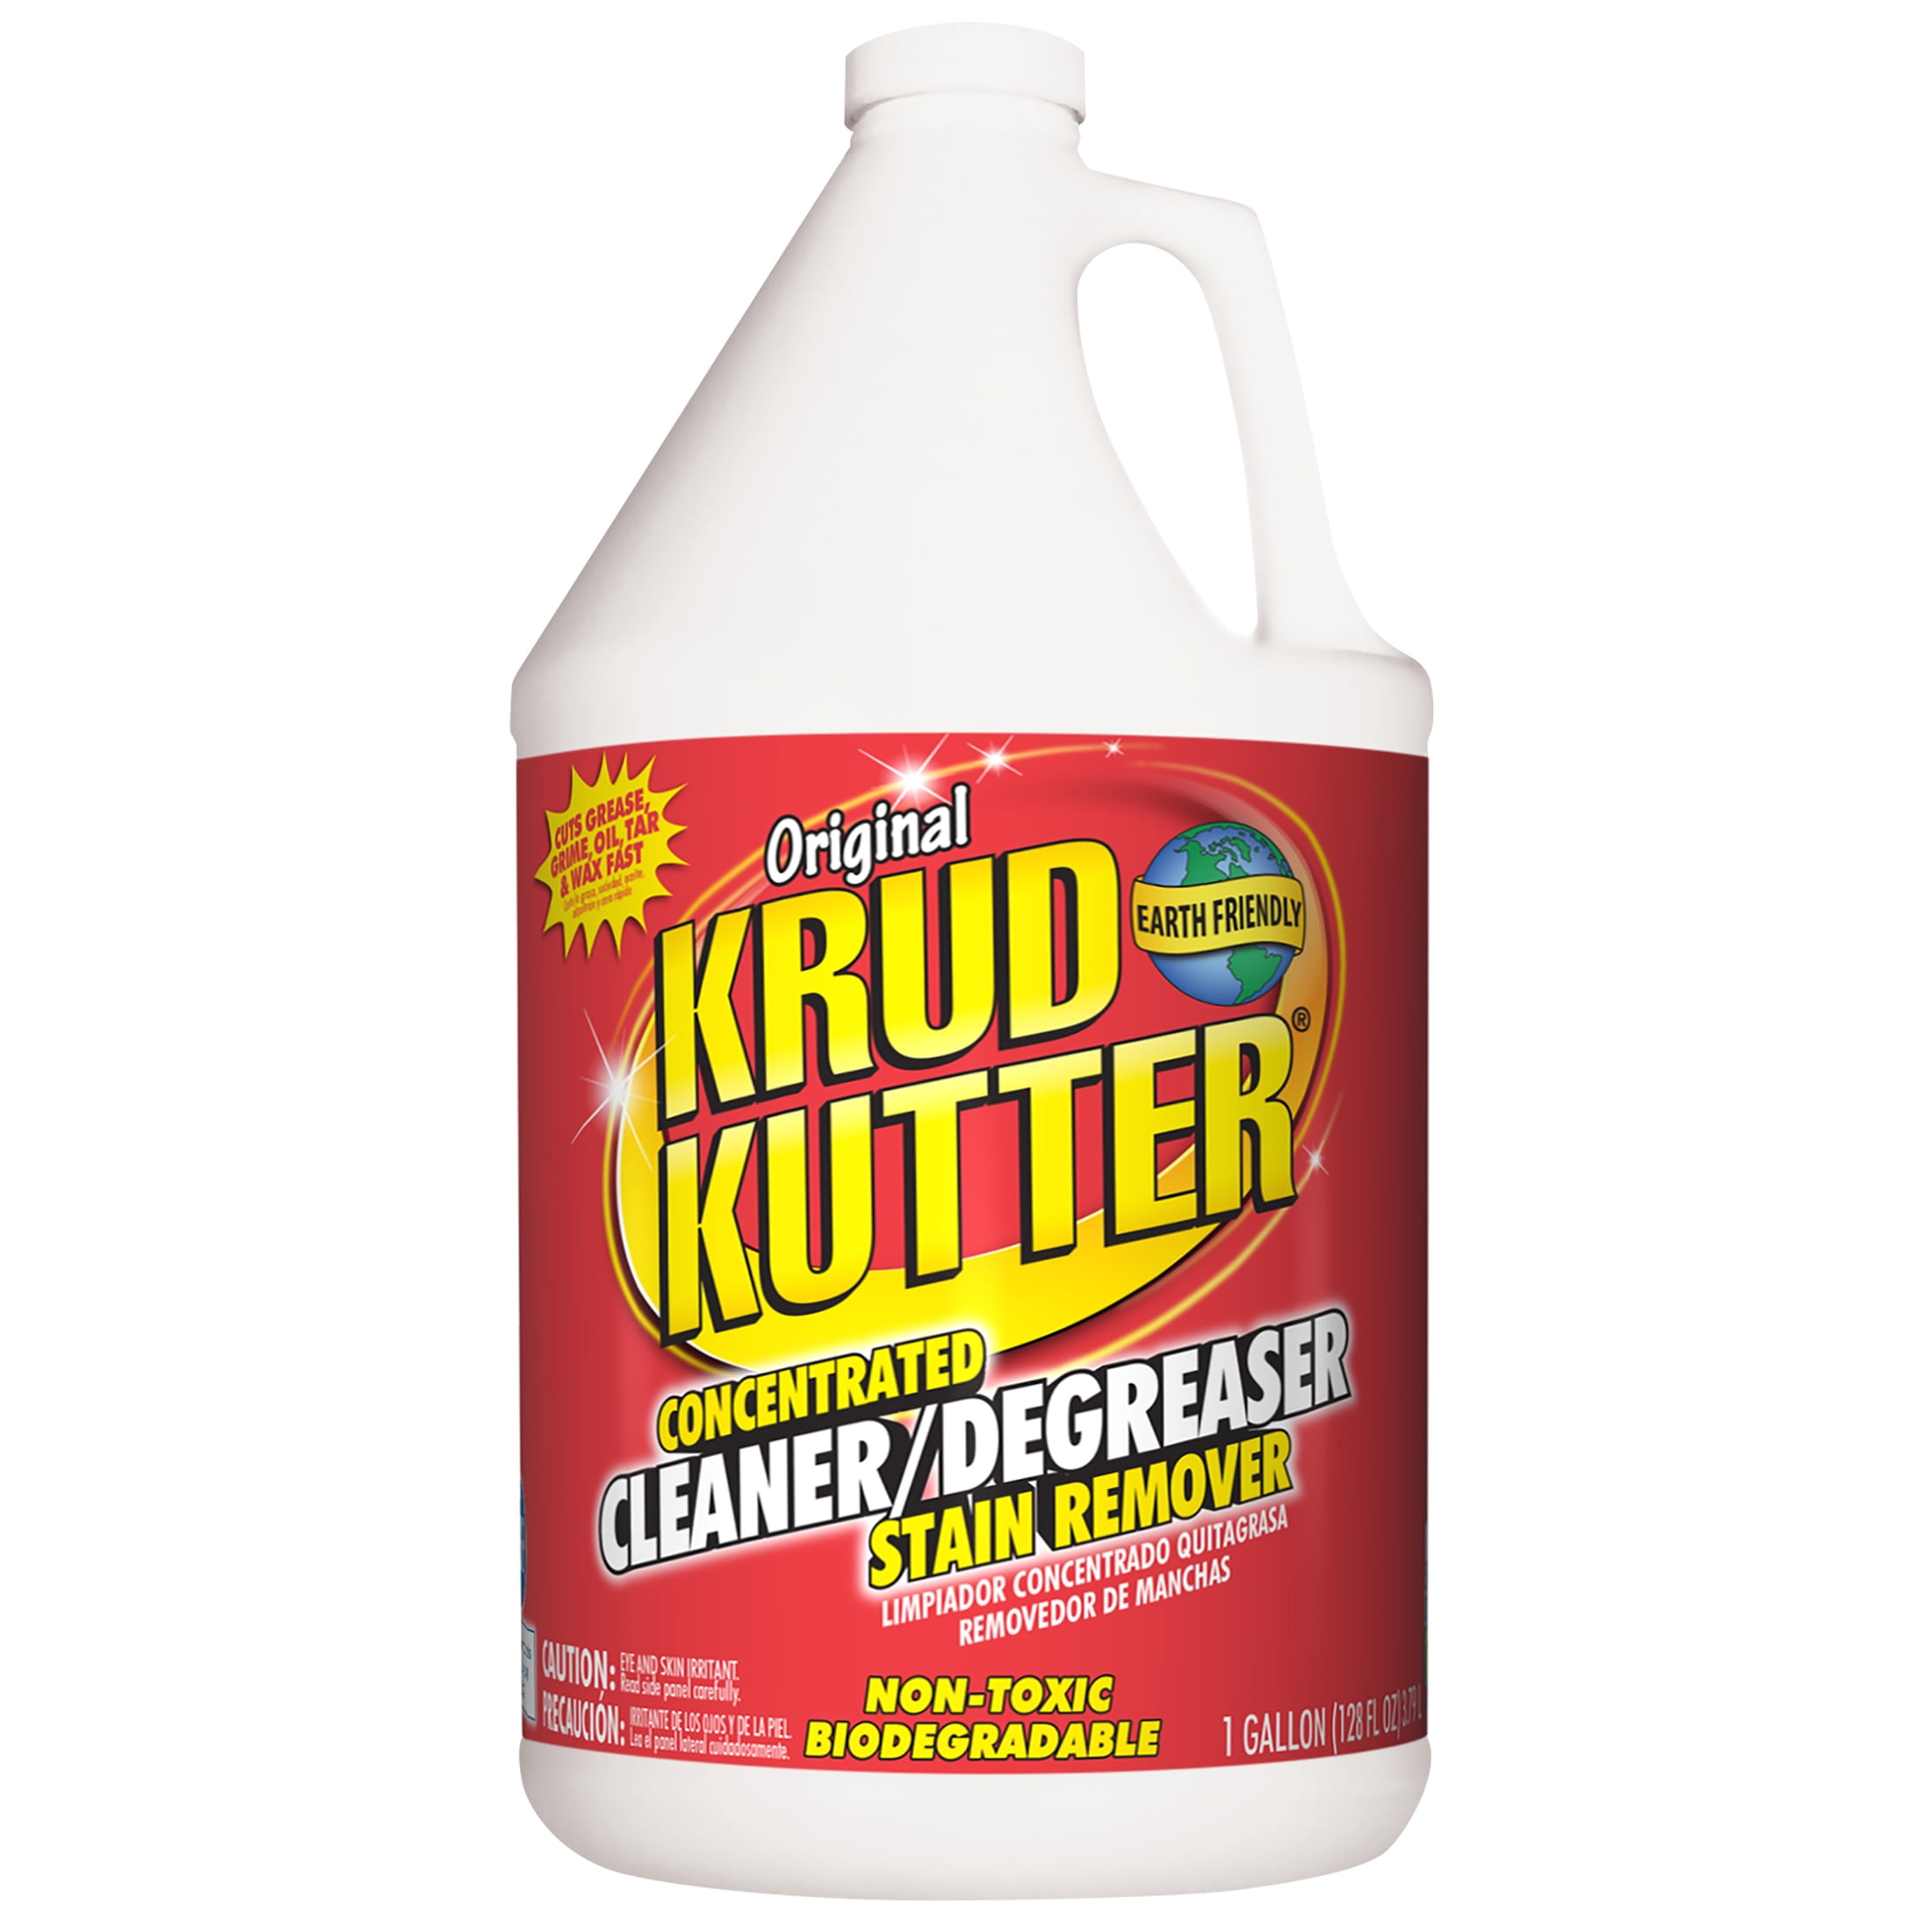 Krud Kutter Original Cleaner/Degreaser & Stain Remover, 1 Gallon